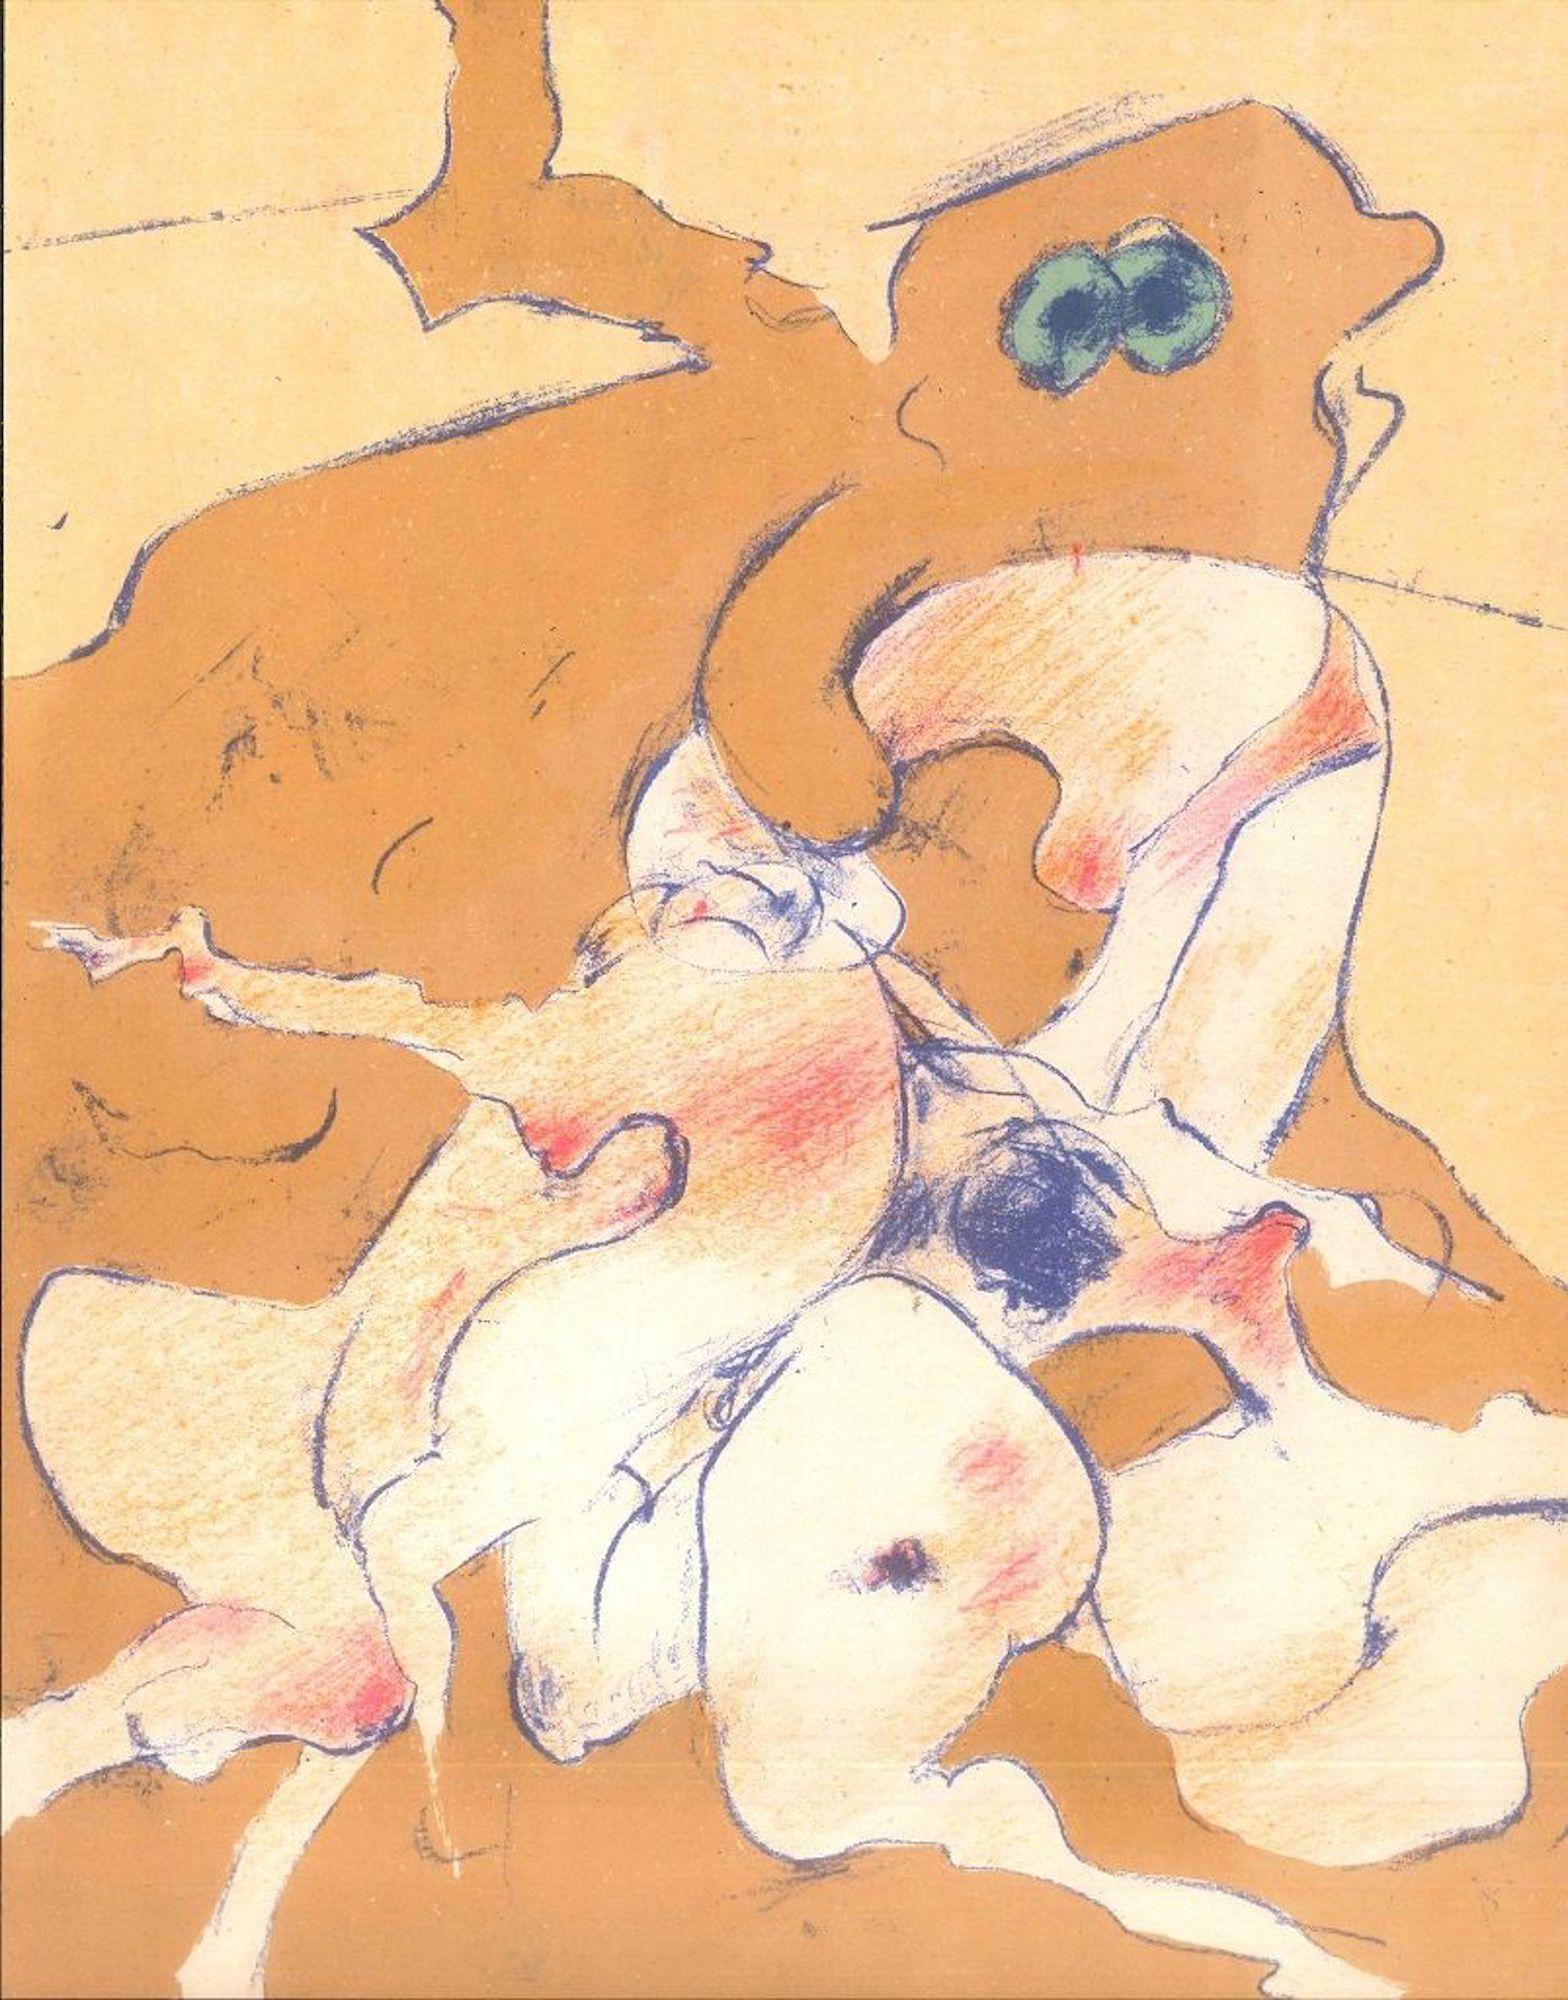 Untitled ist ein Kunstwerk, das Dorothea Tanning 1974 für das Kunstmagazin "XXeme Siècle" realisierte.

Kolorierte Lithographie.

Sehr guter Zustand. Gedruckt im Atelier Pierre Chave in Vence, Frankreich.

Diese Lithographie wurde vom Künstler 1974